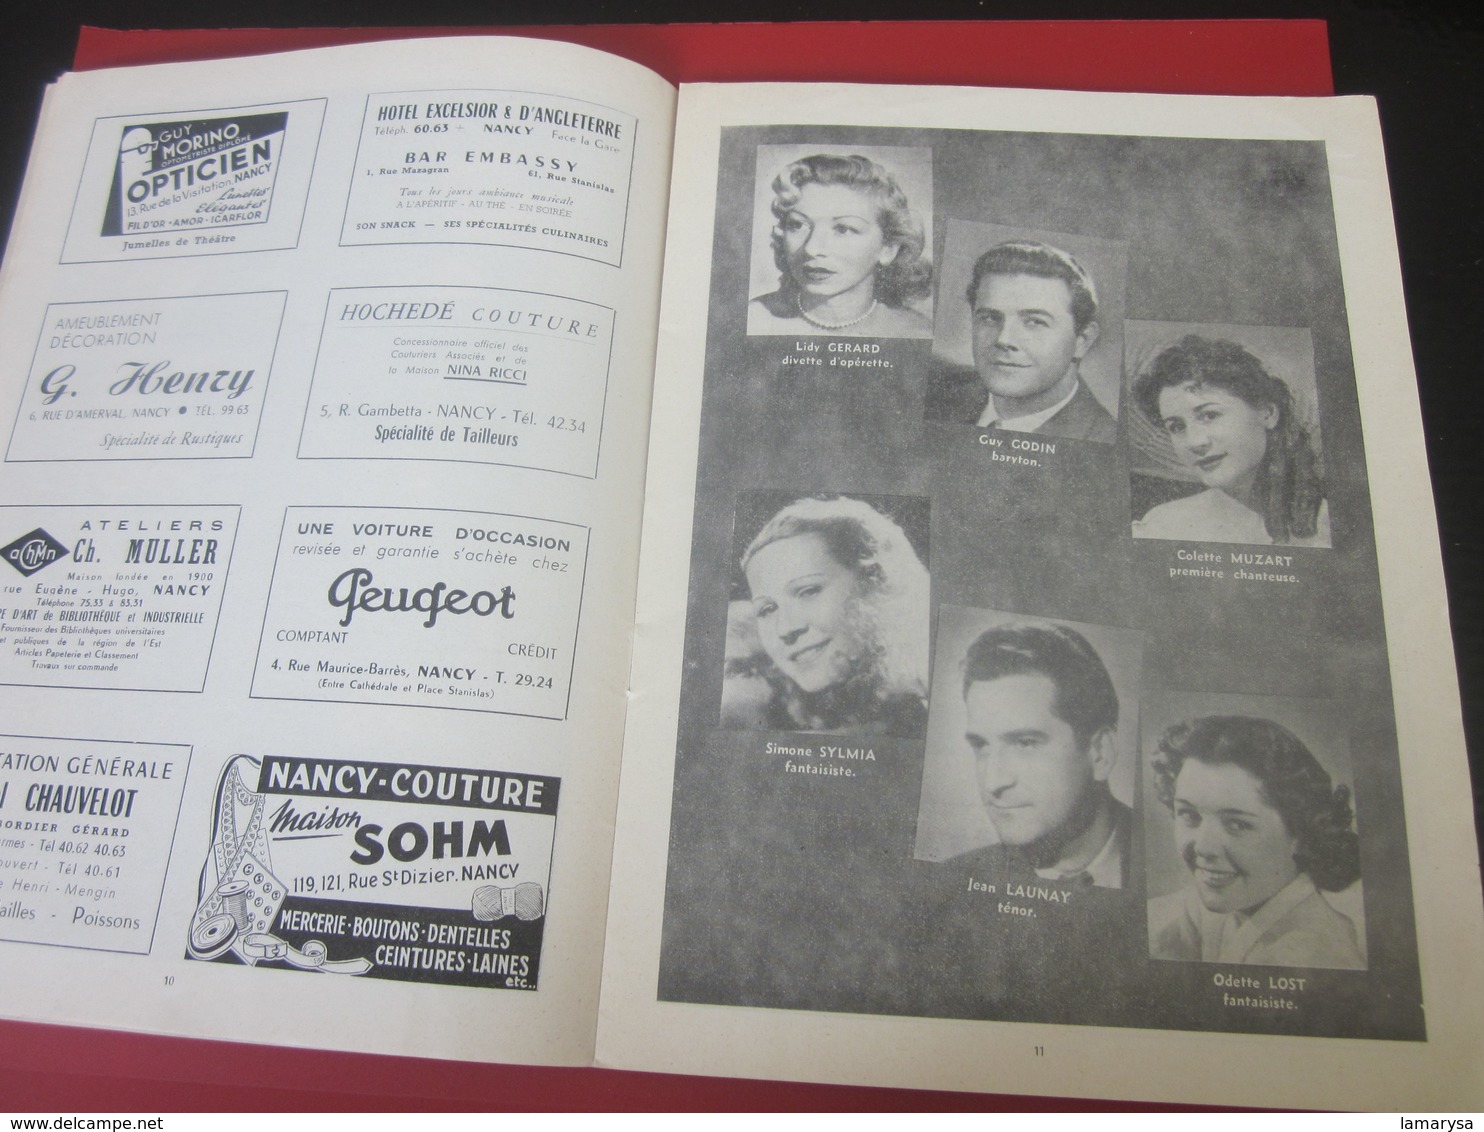 1953-54-PROGRAMME-THÉÂTRE DE NANCY- CARMEN-LA FLAMENCA--PHOTOS ARTISTES-DANSE- COMÉDIE - PUBLICITÉ BIÈRE